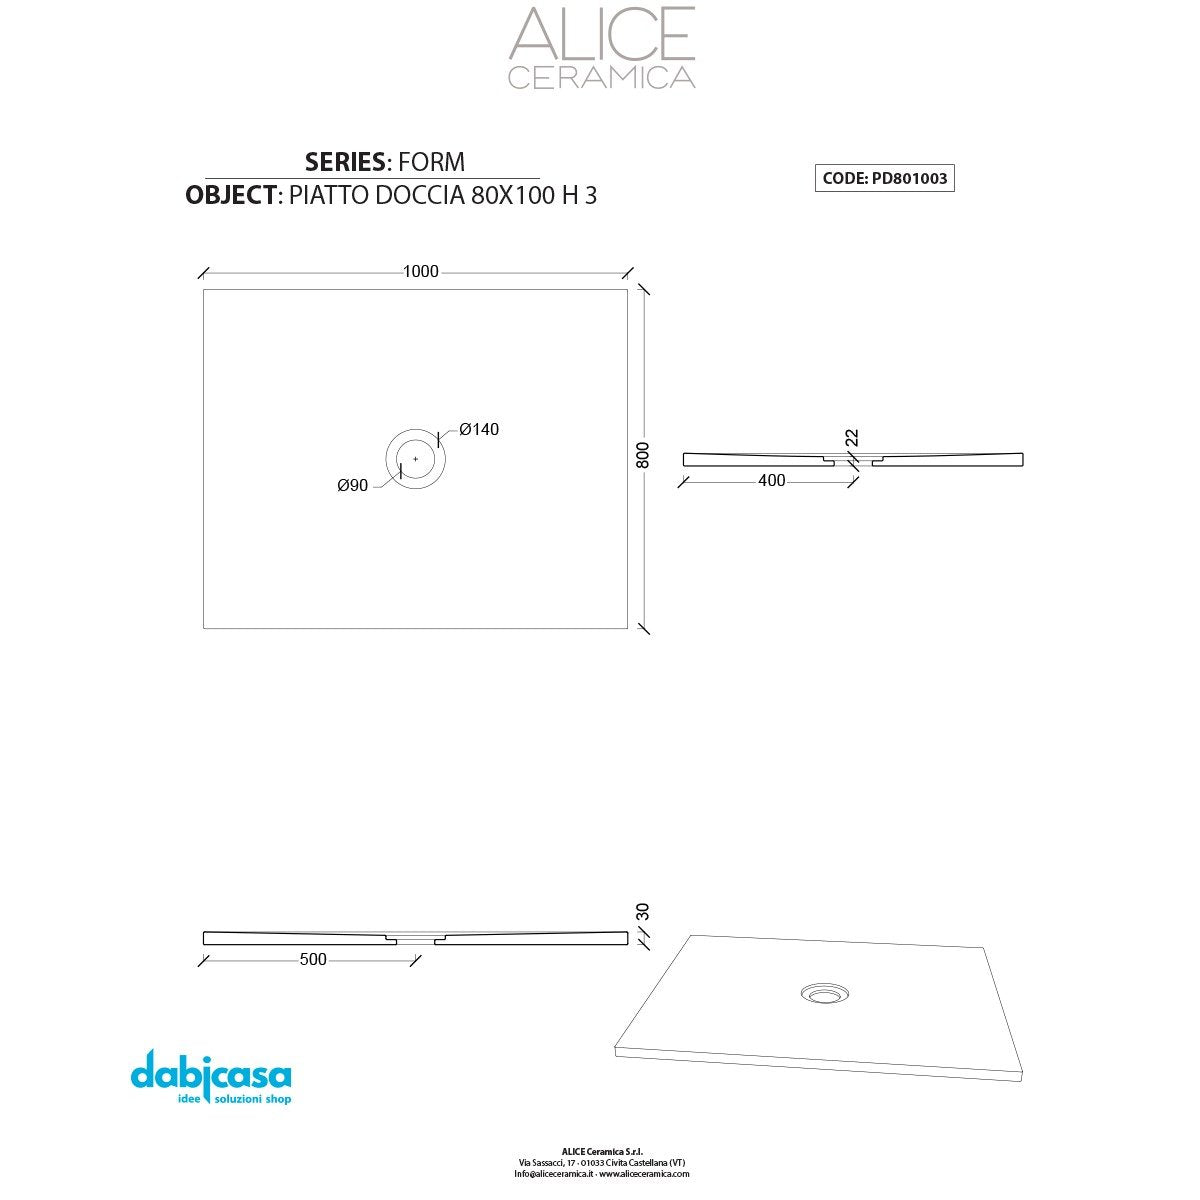 Piatto Doccia Alice Ceramica "Serie Form" 80x100 cm h 3 Colore Antracite freeshipping - Dabicasa